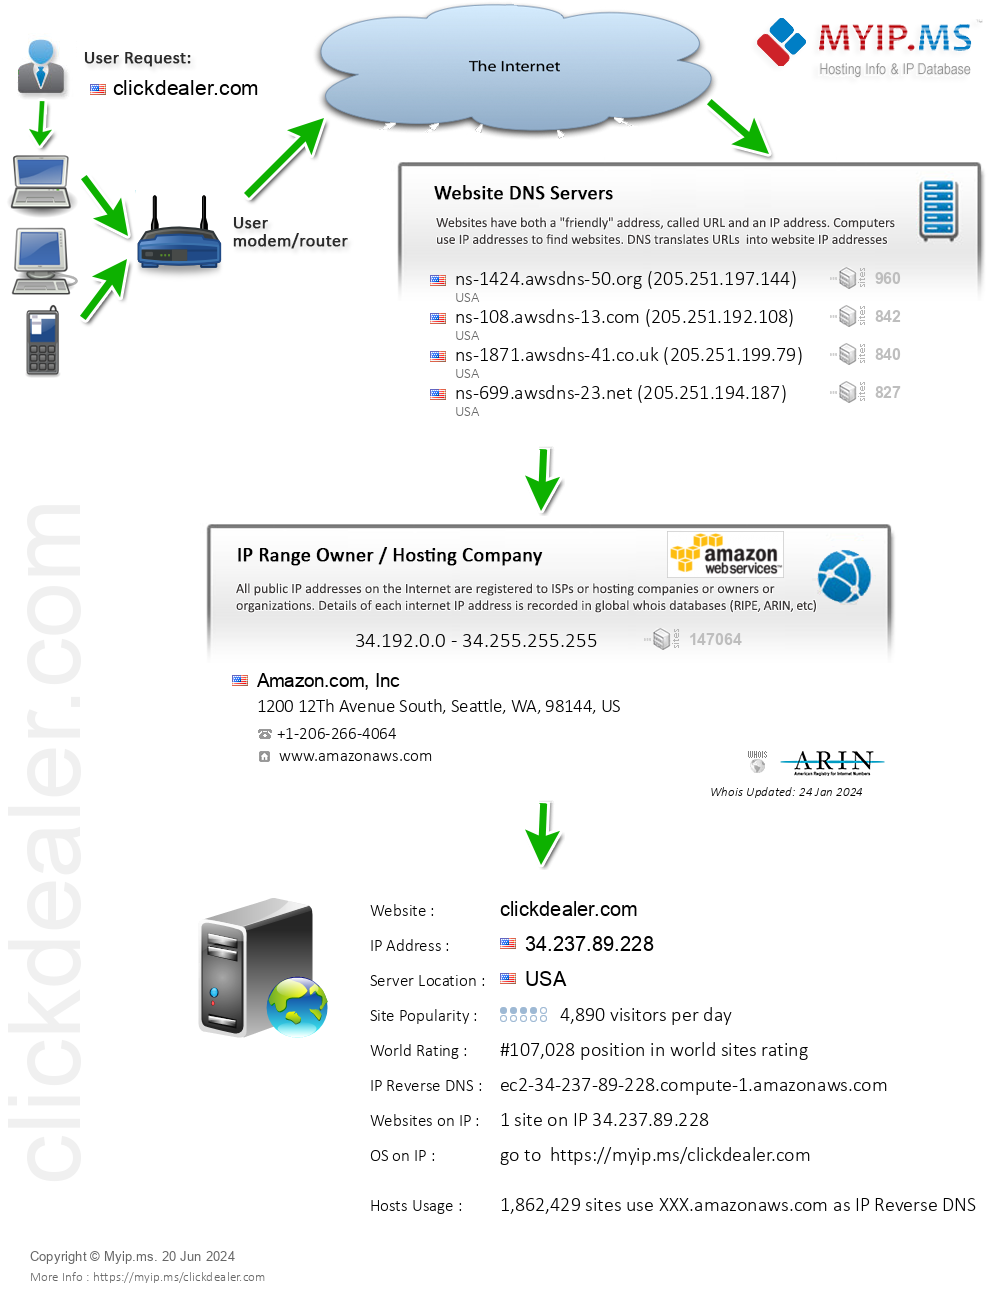 Clickdealer.com - Website Hosting Visual IP Diagram